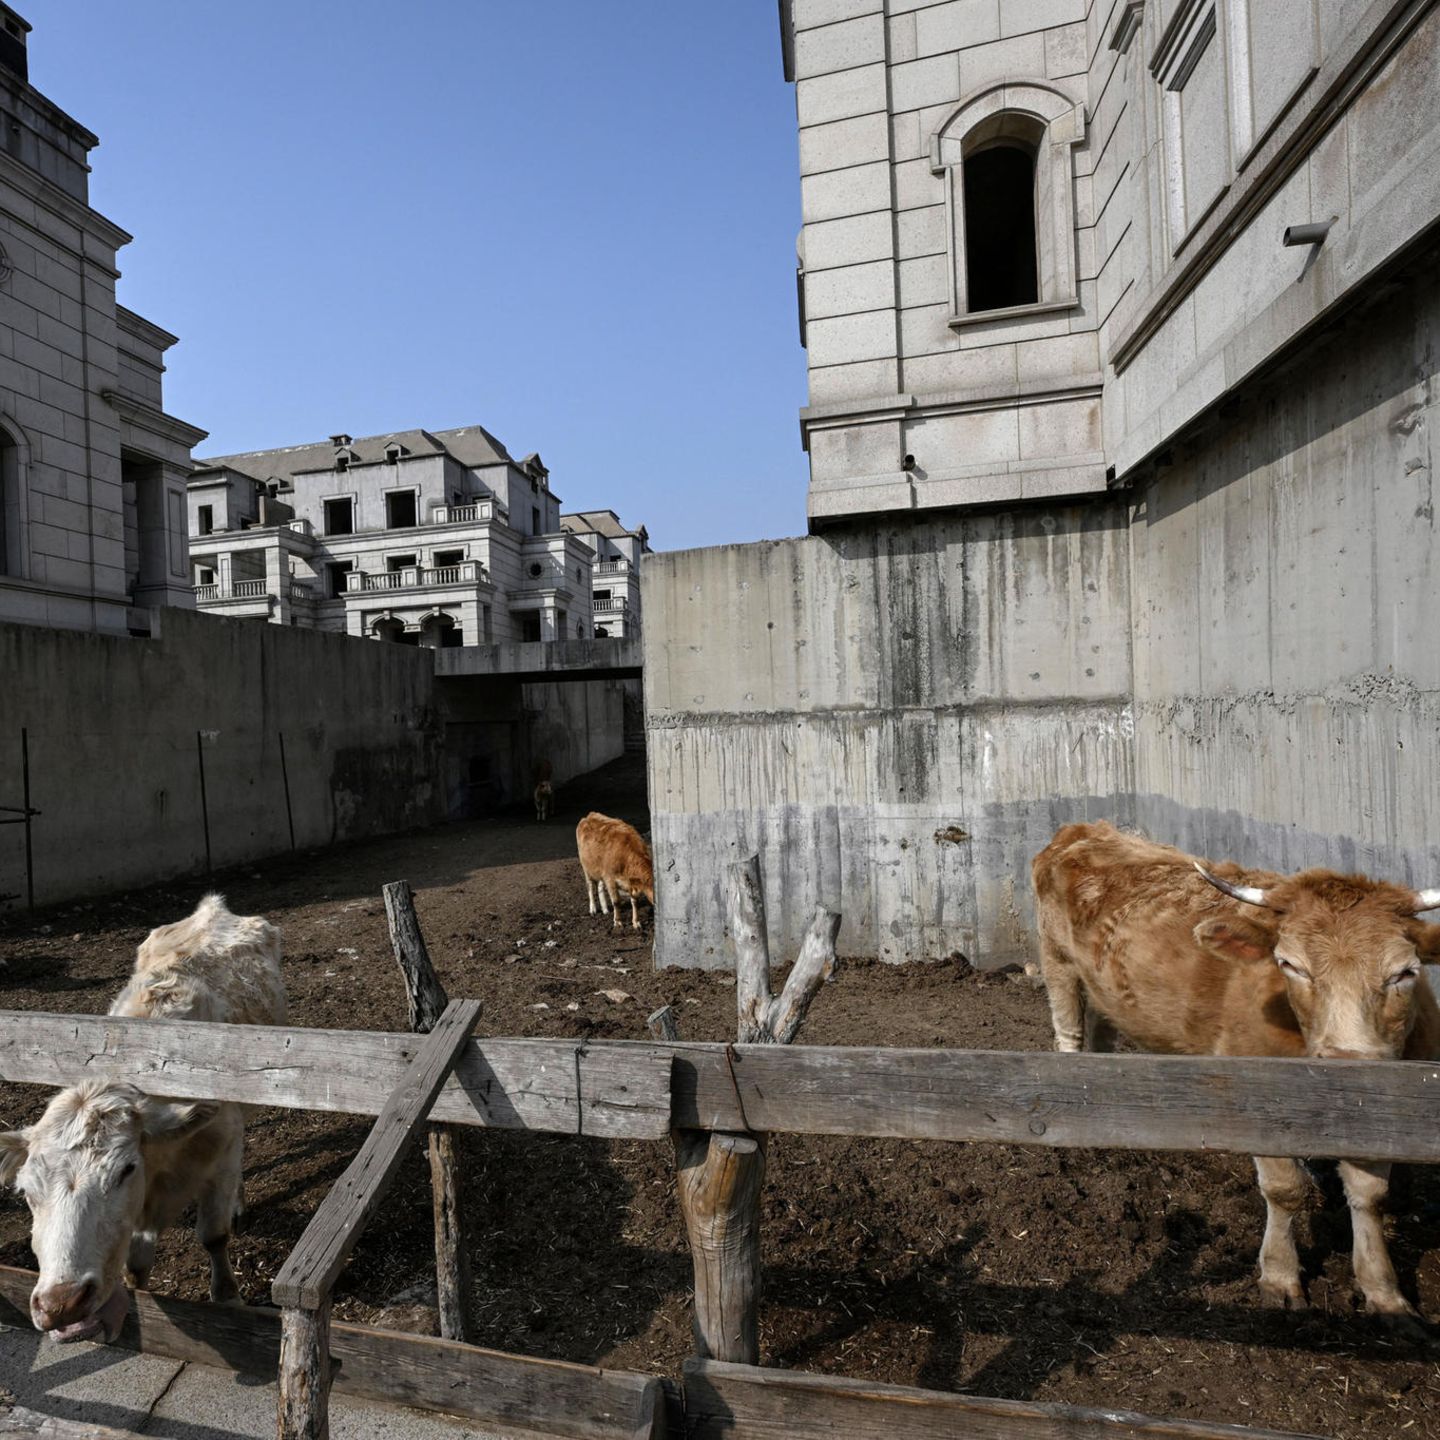 Geisterstadt in China: Rinderherden schwelgt jetzt im Luxus